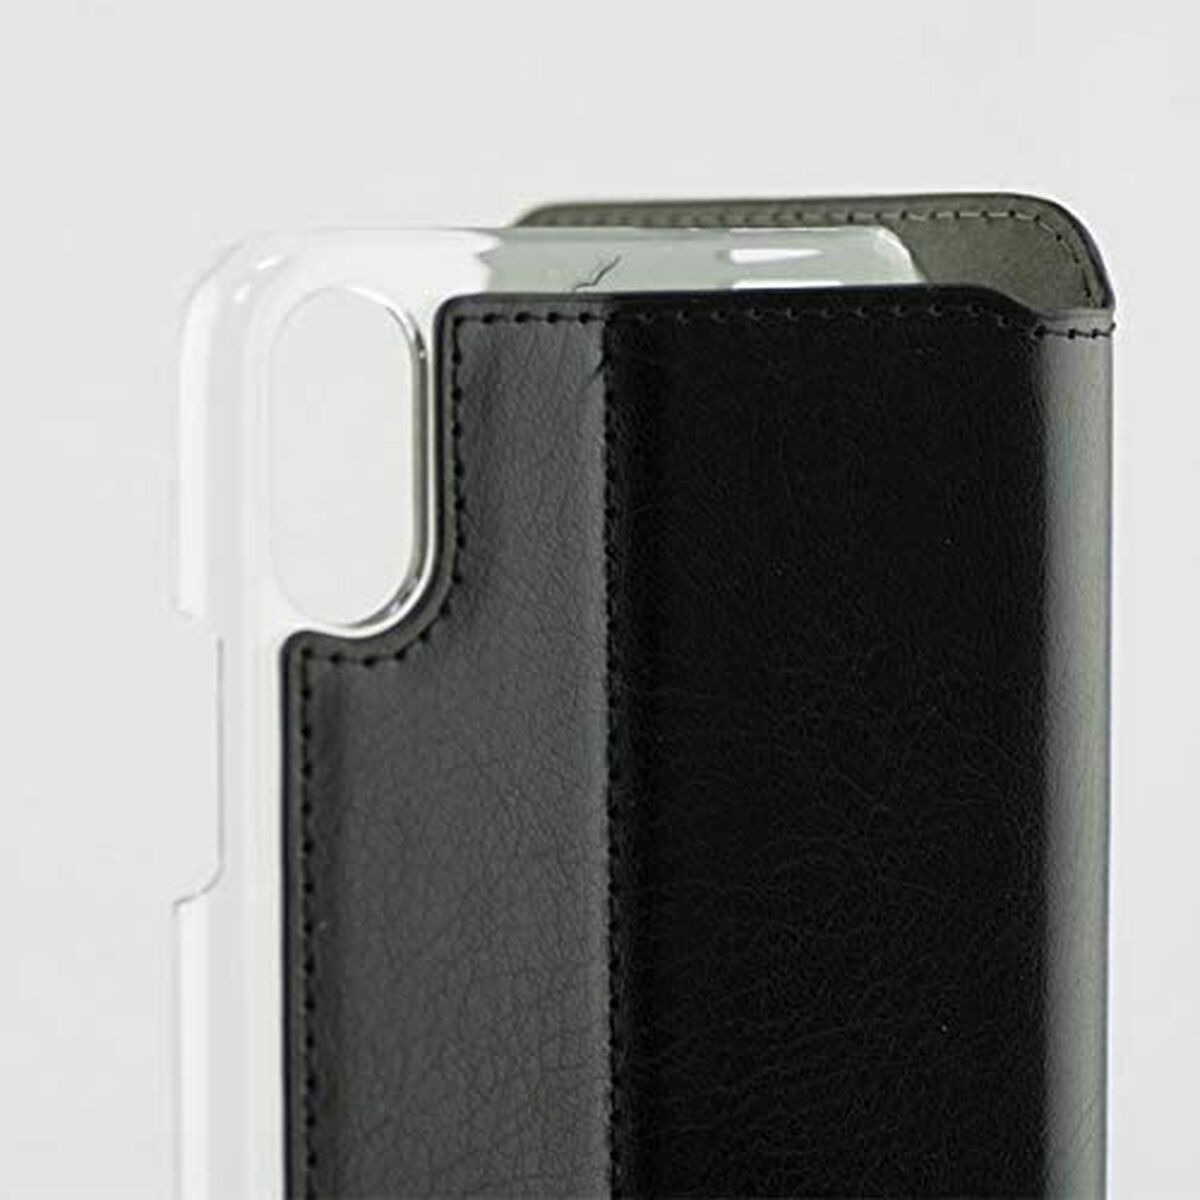 Housse pour Mobile avec coque Iphone X Contact Slim Noir Textile Polycarbonate